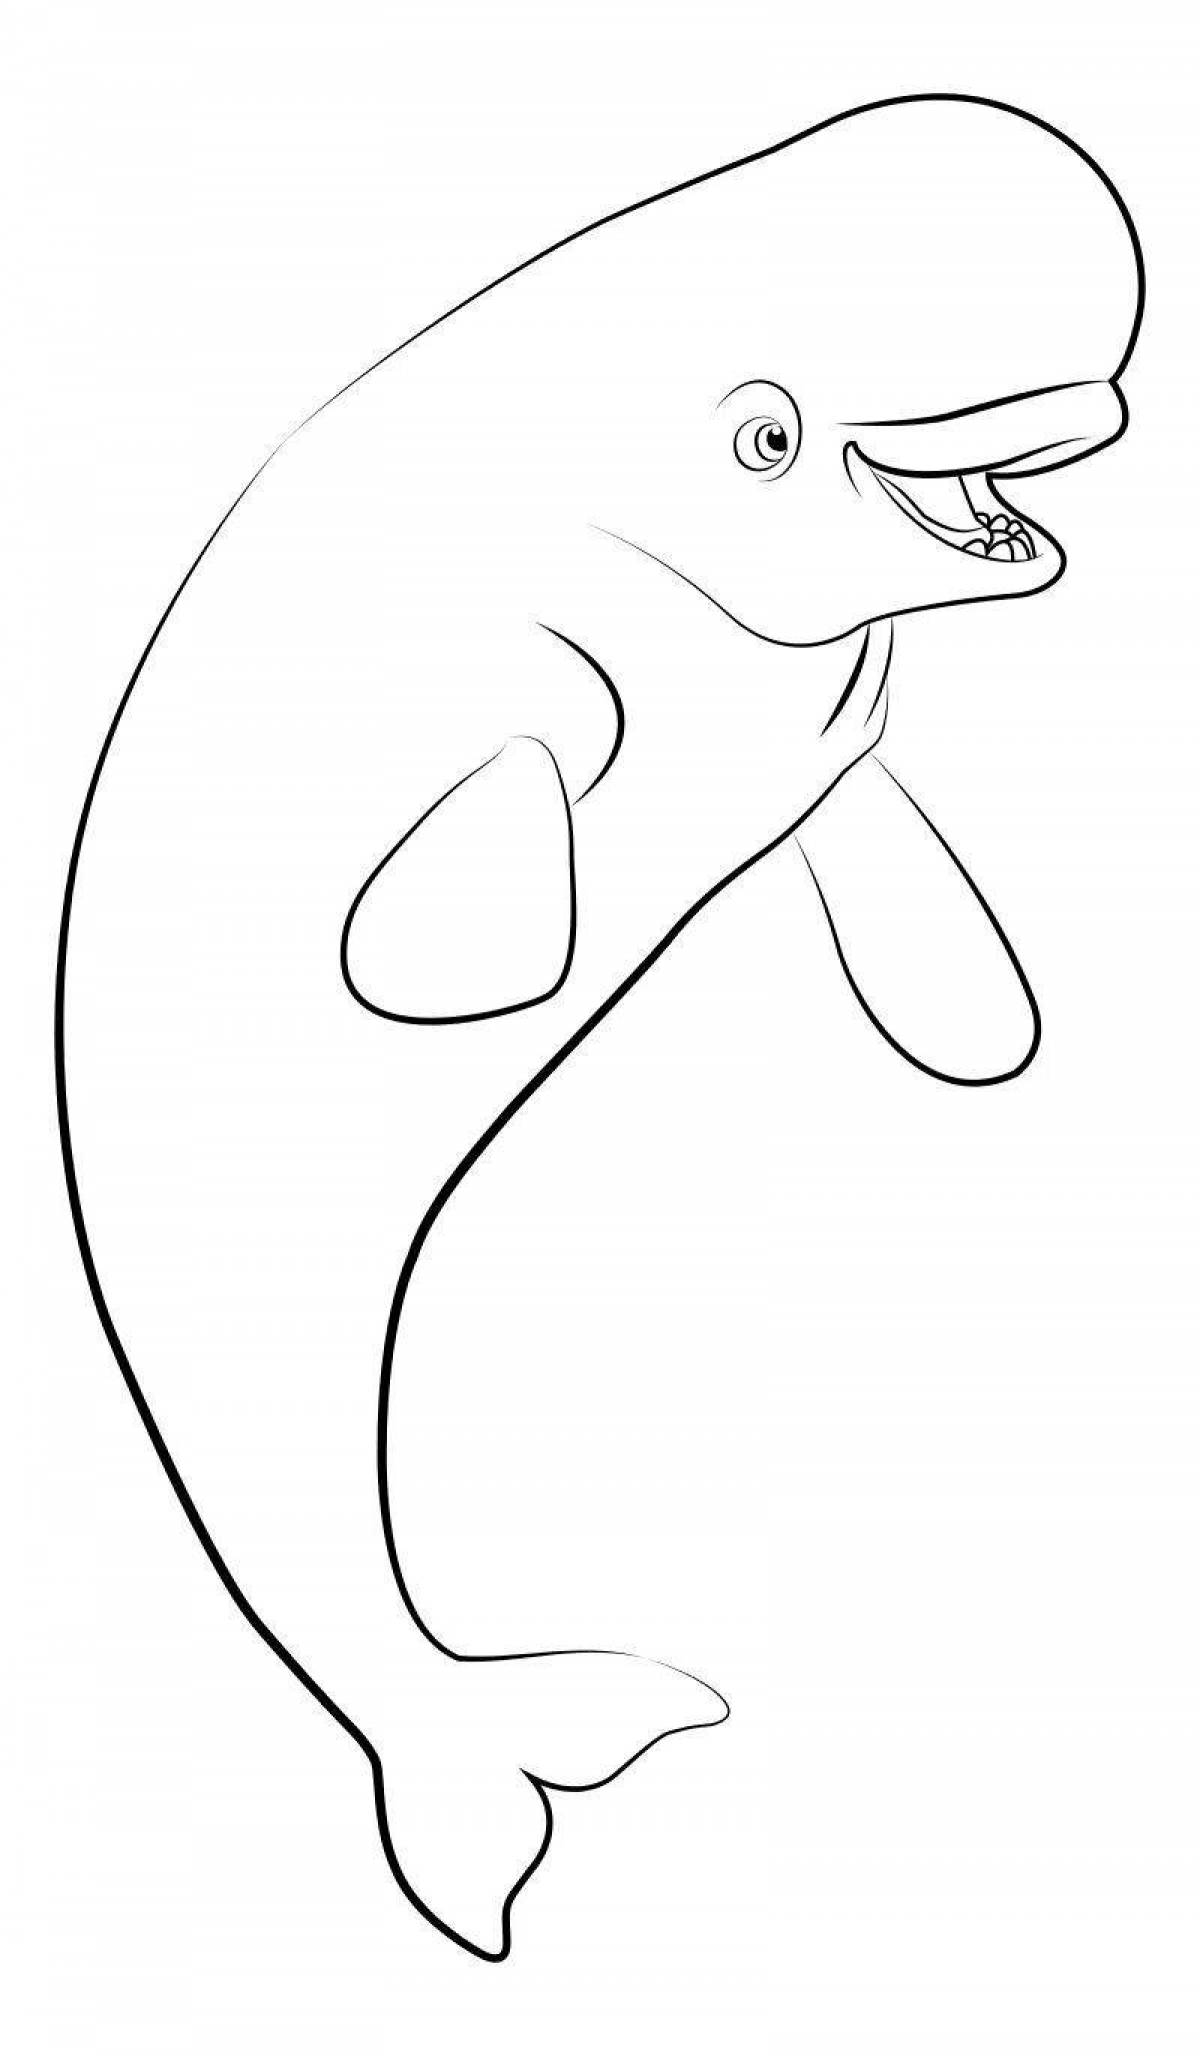 Раскраска ослепительно белый кит